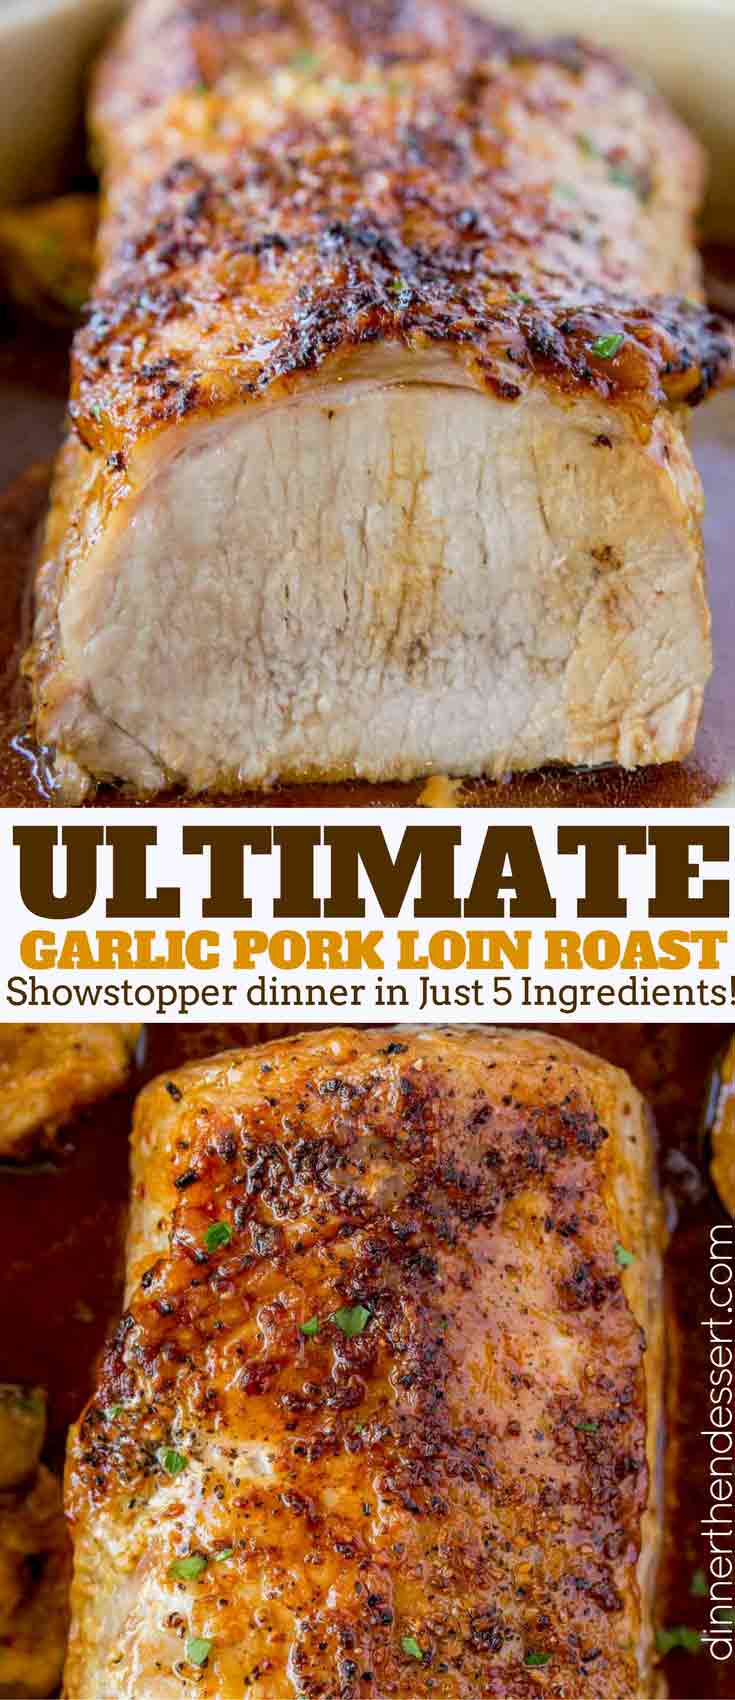 Ultimate Garlic Pork Loin Roast Dinner Then Dessert,Mind Eraser Elitches